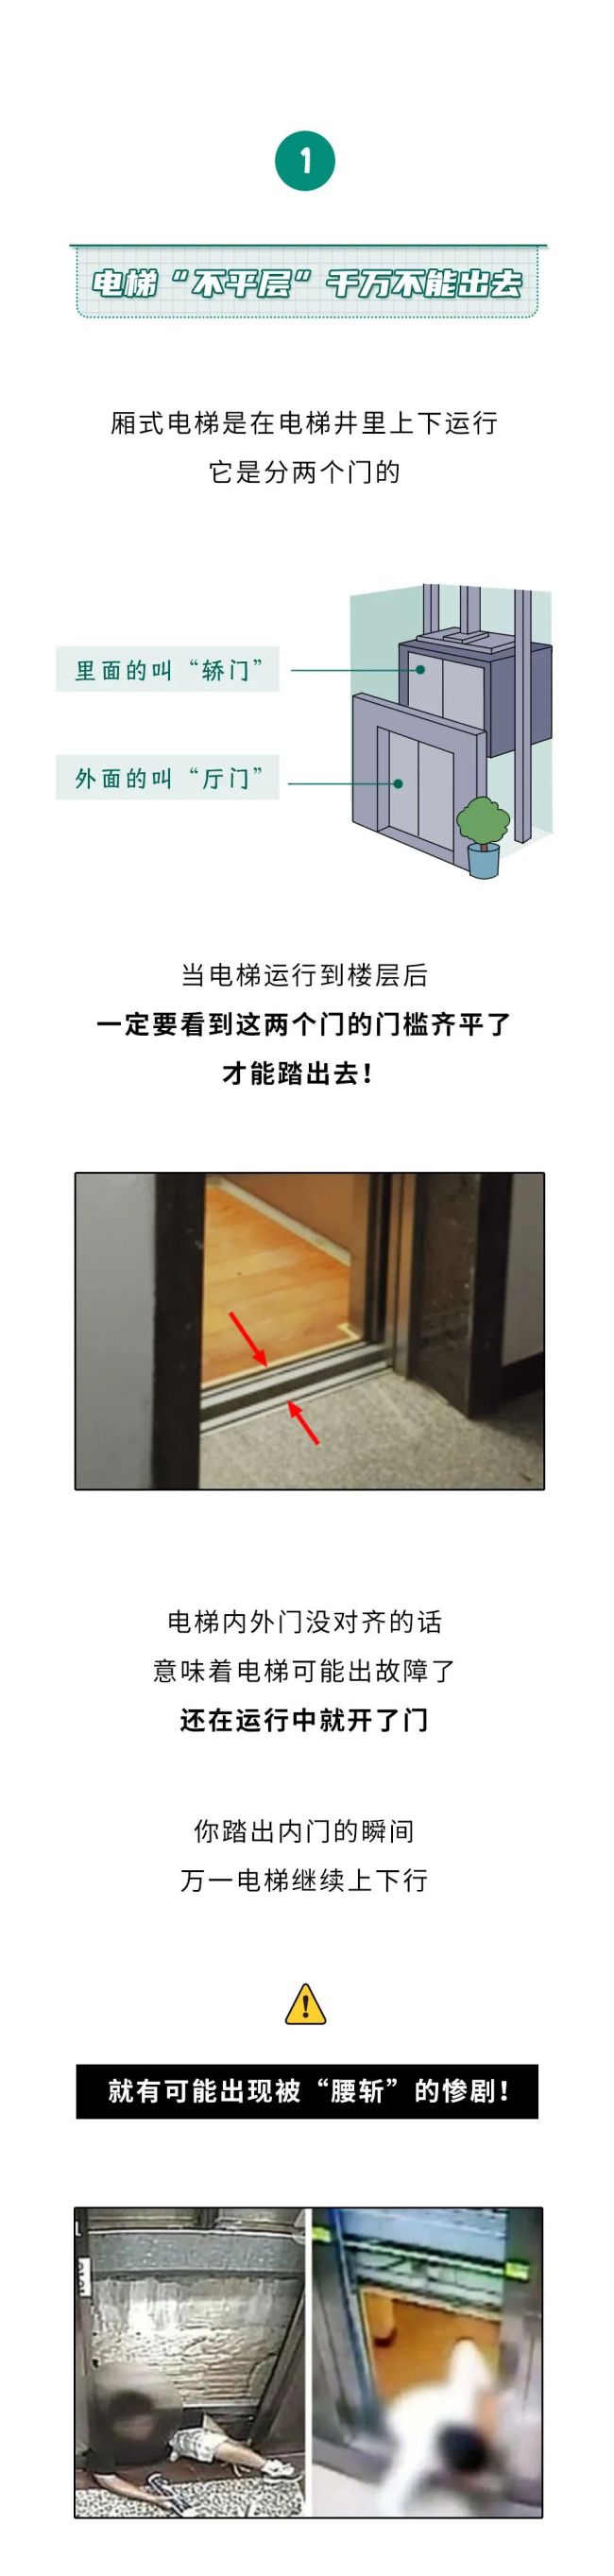 为啥电梯开门看到一堵墙千万不能出 冷静应对，待援更安全